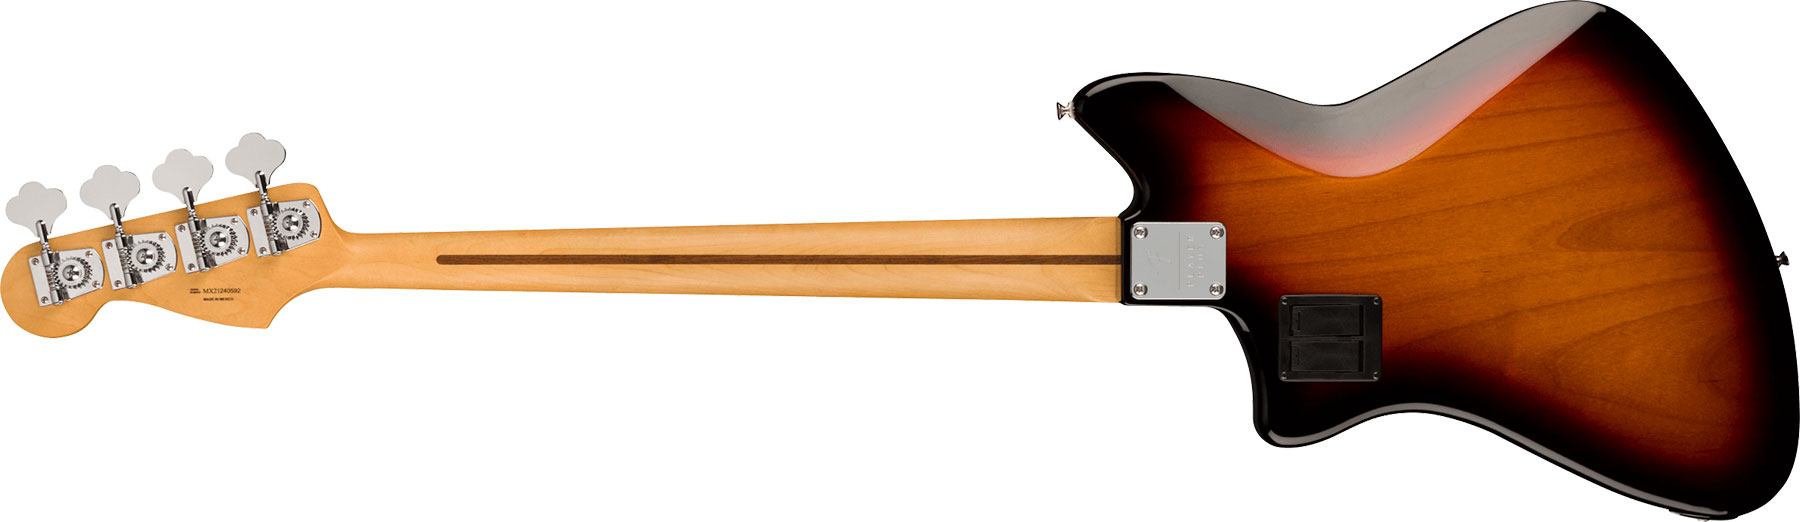 Fender Meteora Bass Active Player Plus Mex Mn - 3-color Sunburst - Basse Électrique Solid Body - Variation 1